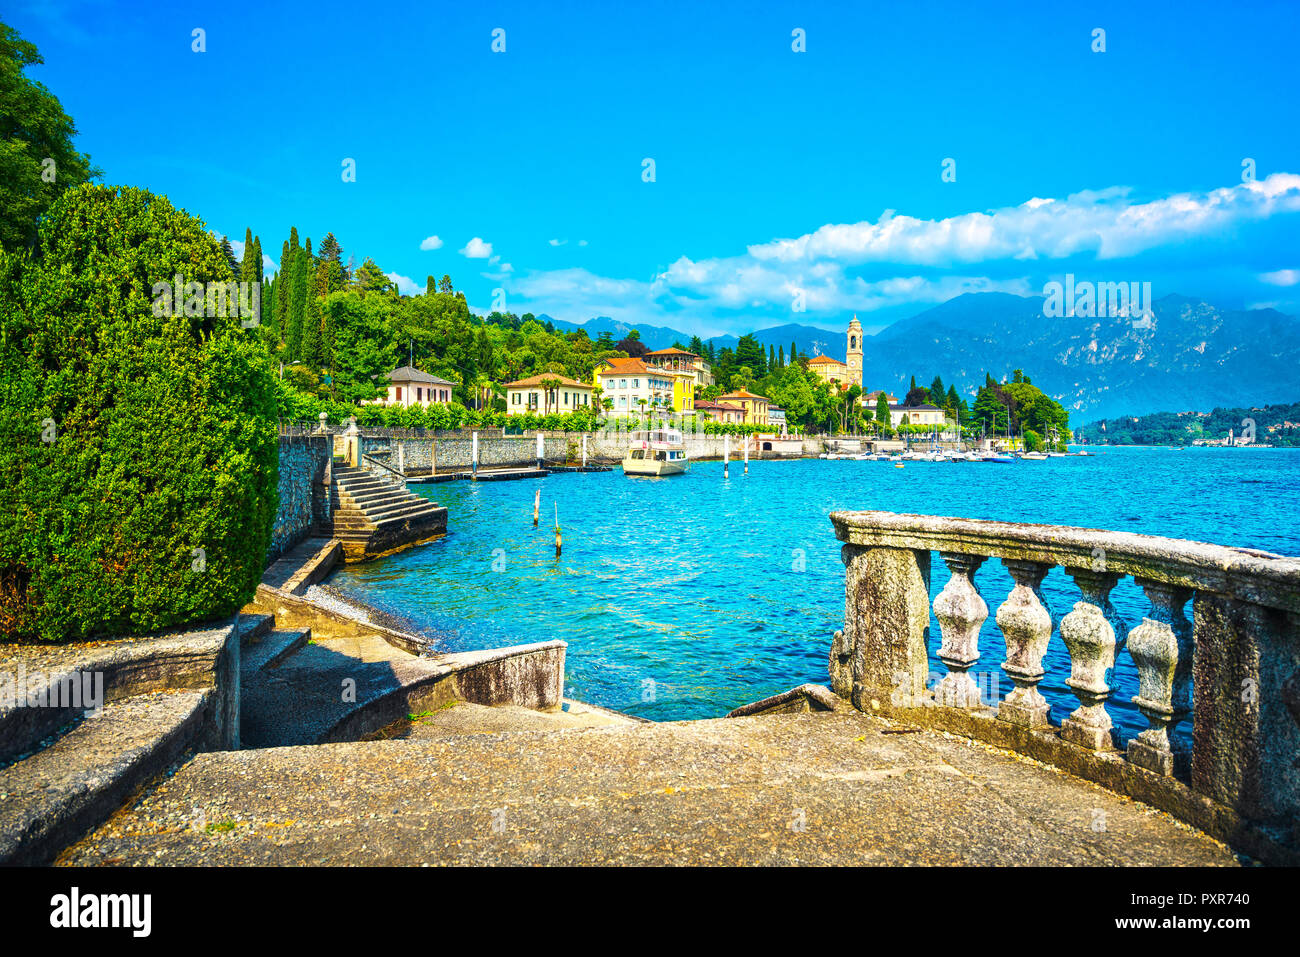 Tremezzo Tremezzina à Como lake district. Le lac - vue sur le village traditionnel italien et des escaliers. L'Italie, l'Europe. Banque D'Images